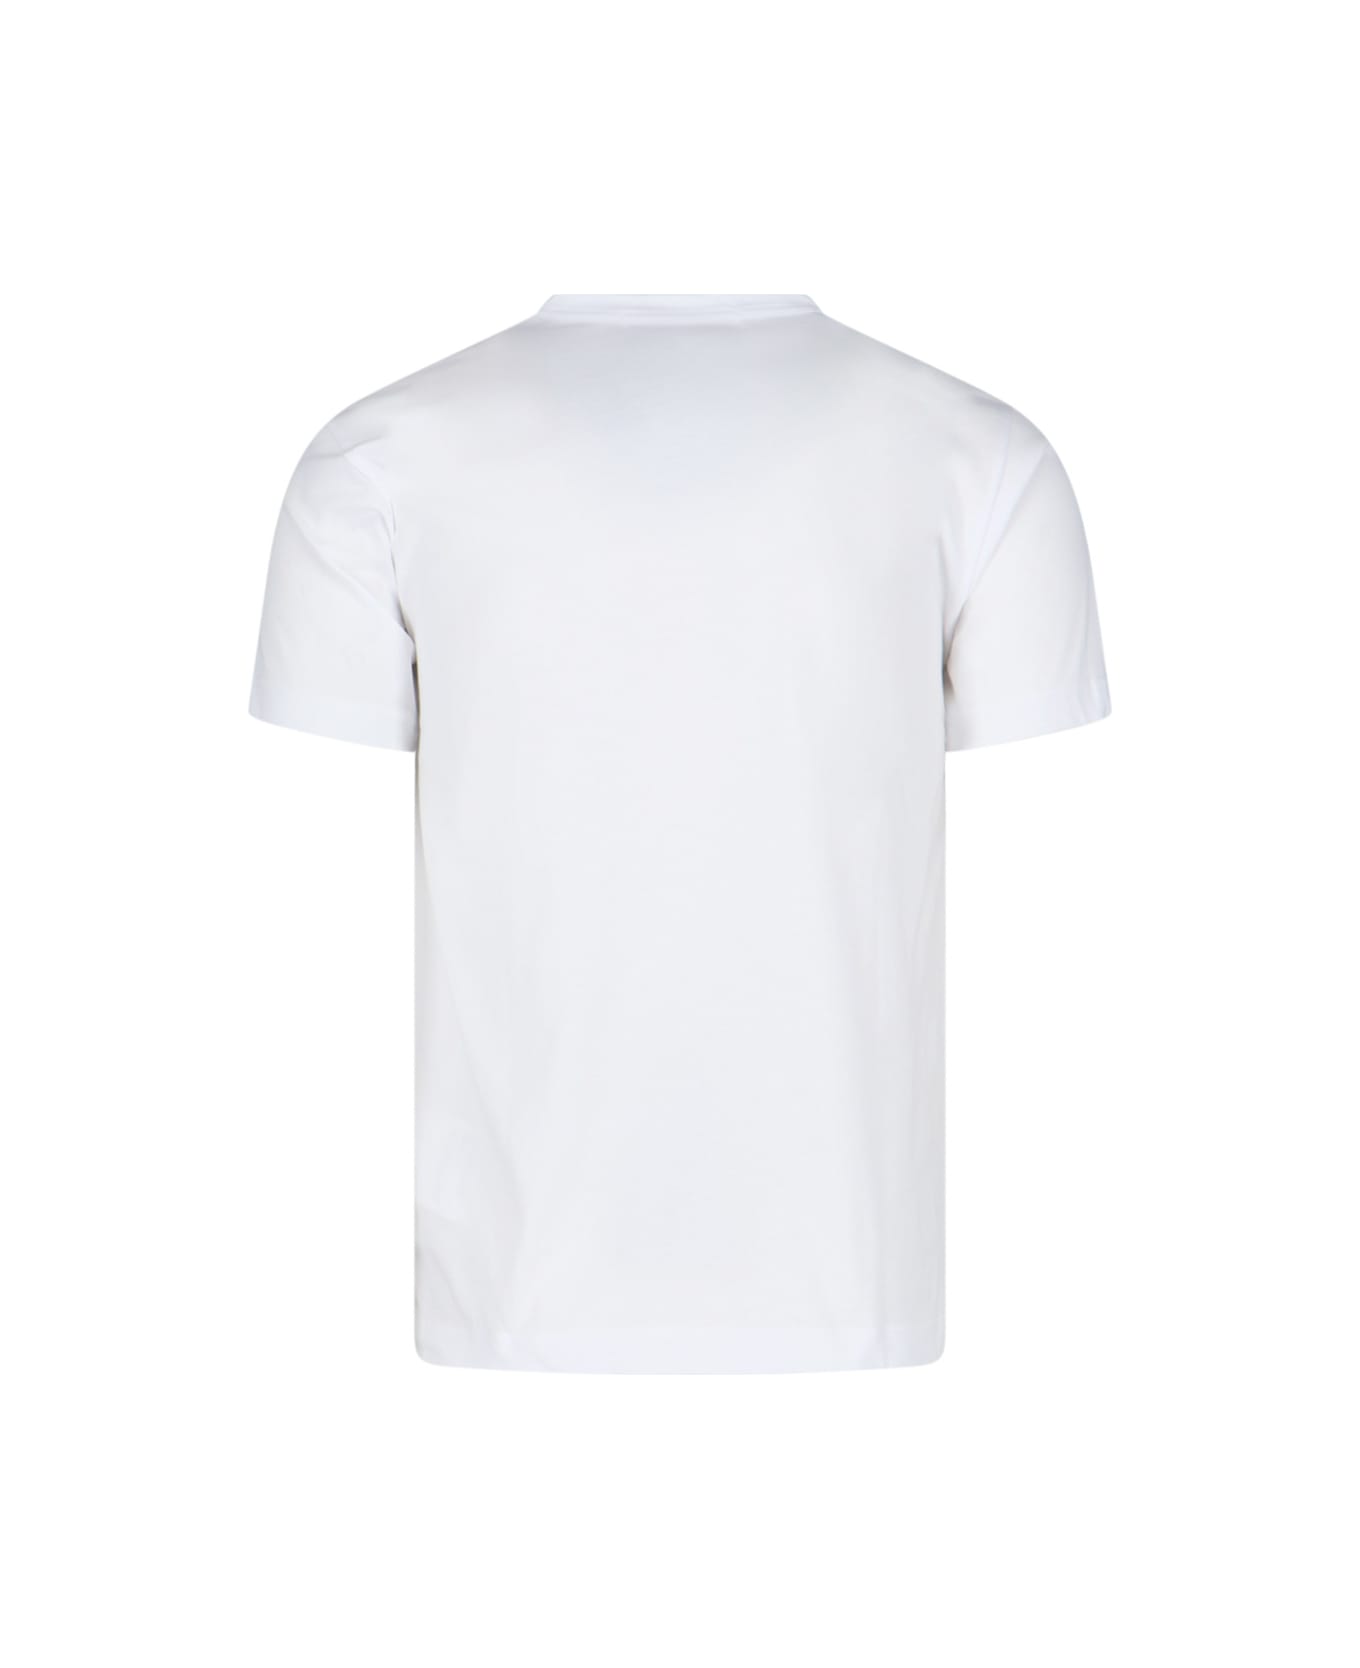 Comme des Garçons Printed T-shirt - White